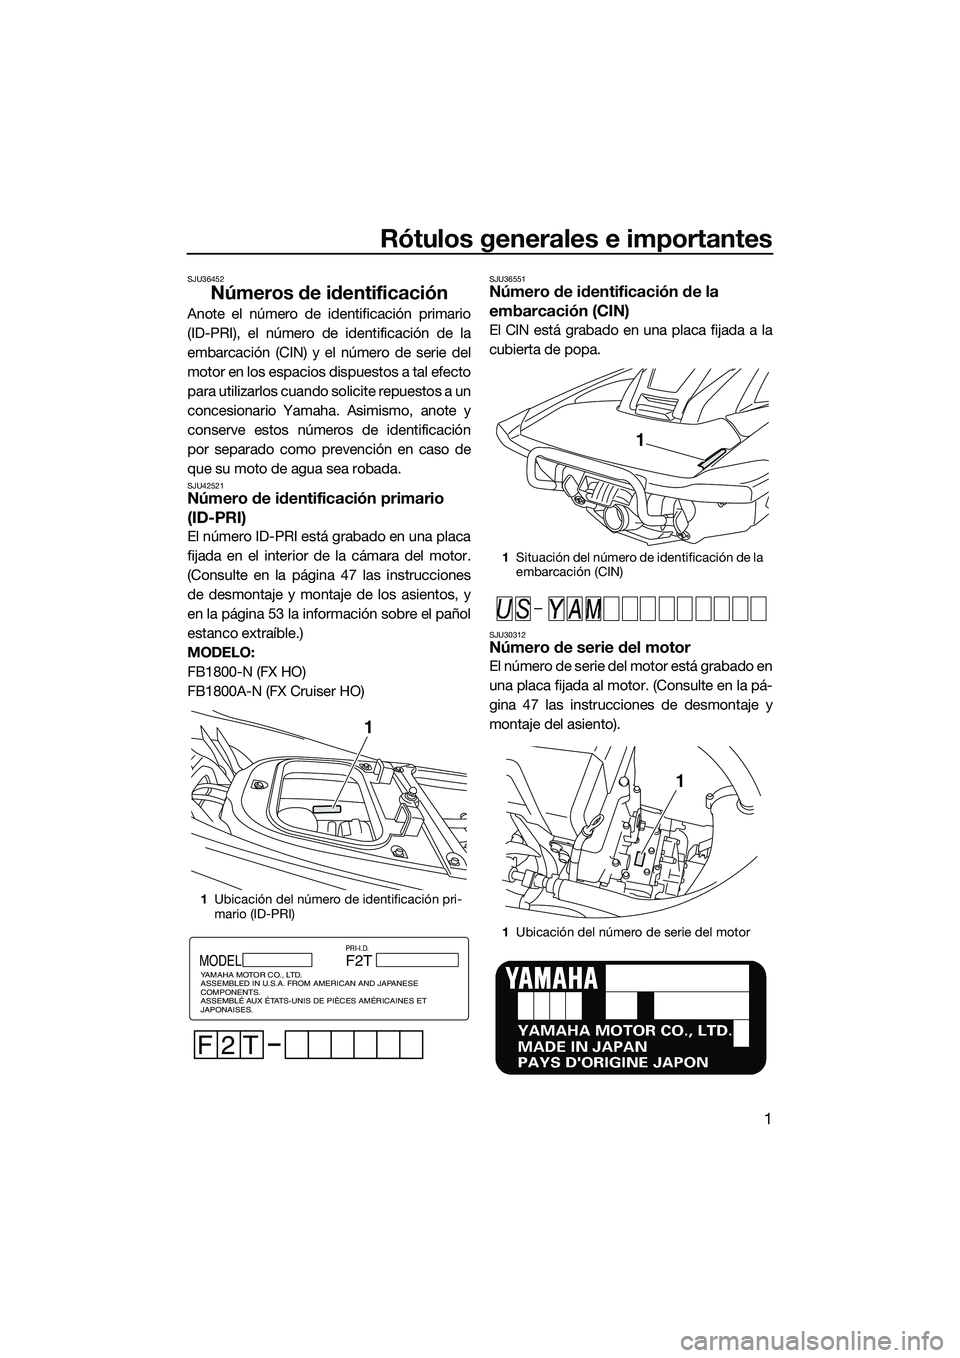 YAMAHA FX HO 2014  Manuale de Empleo (in Spanish) Rótulos generales e importantes
1
SJU36452
Números de identificación
Anote el número de identificación primario
(ID-PRI), el número de identificación de la
embarcación (CIN) y el número de se